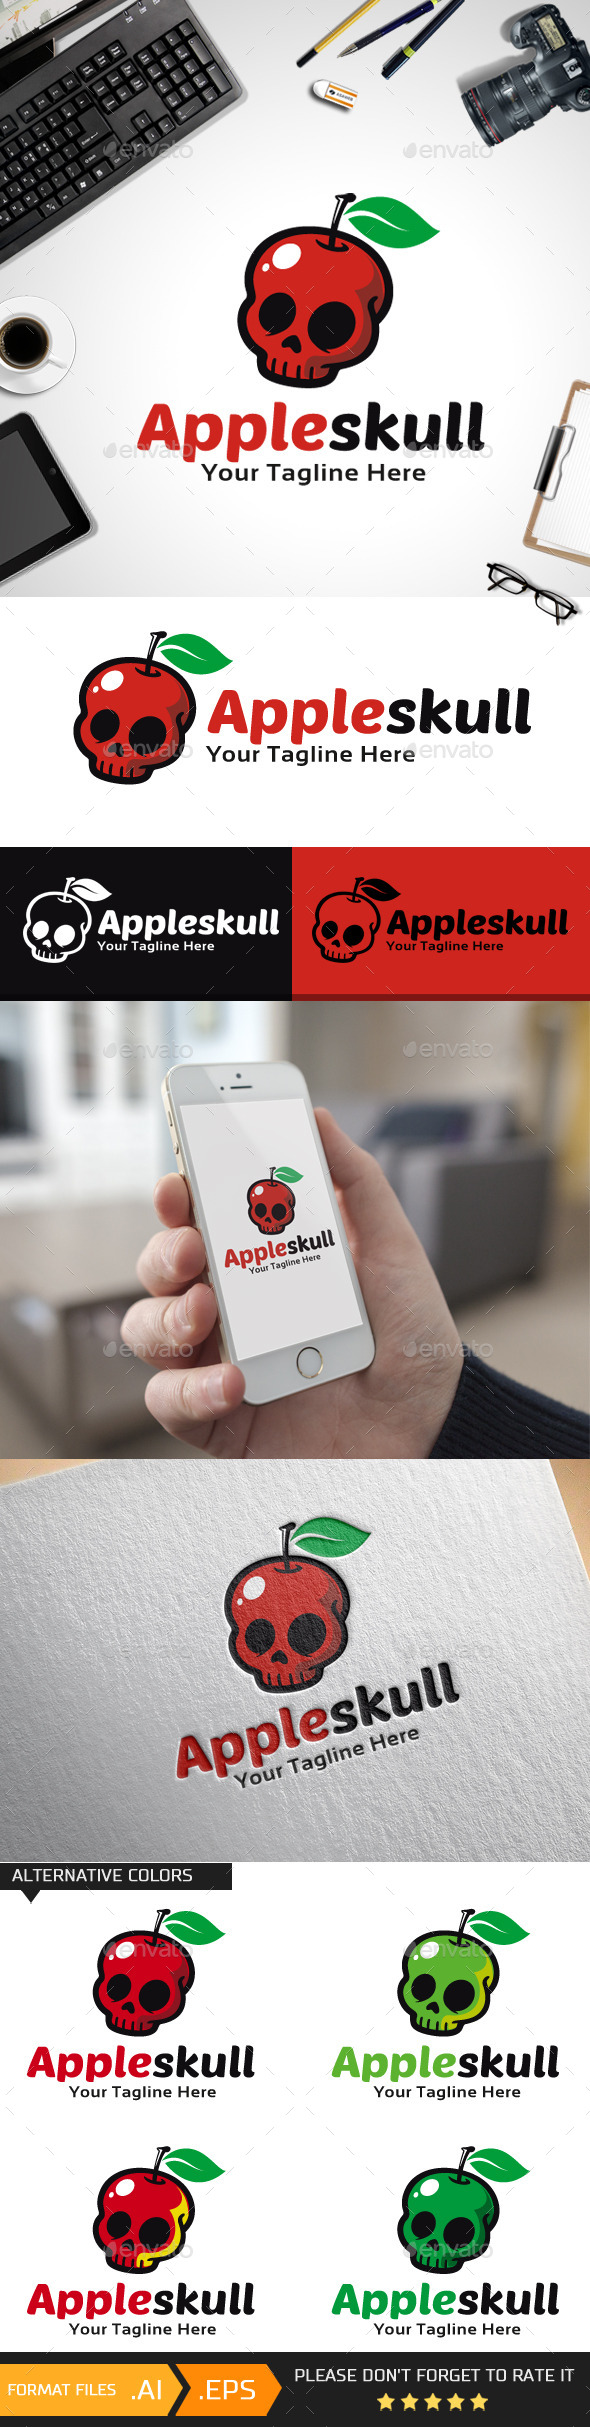 Apple skull logo template